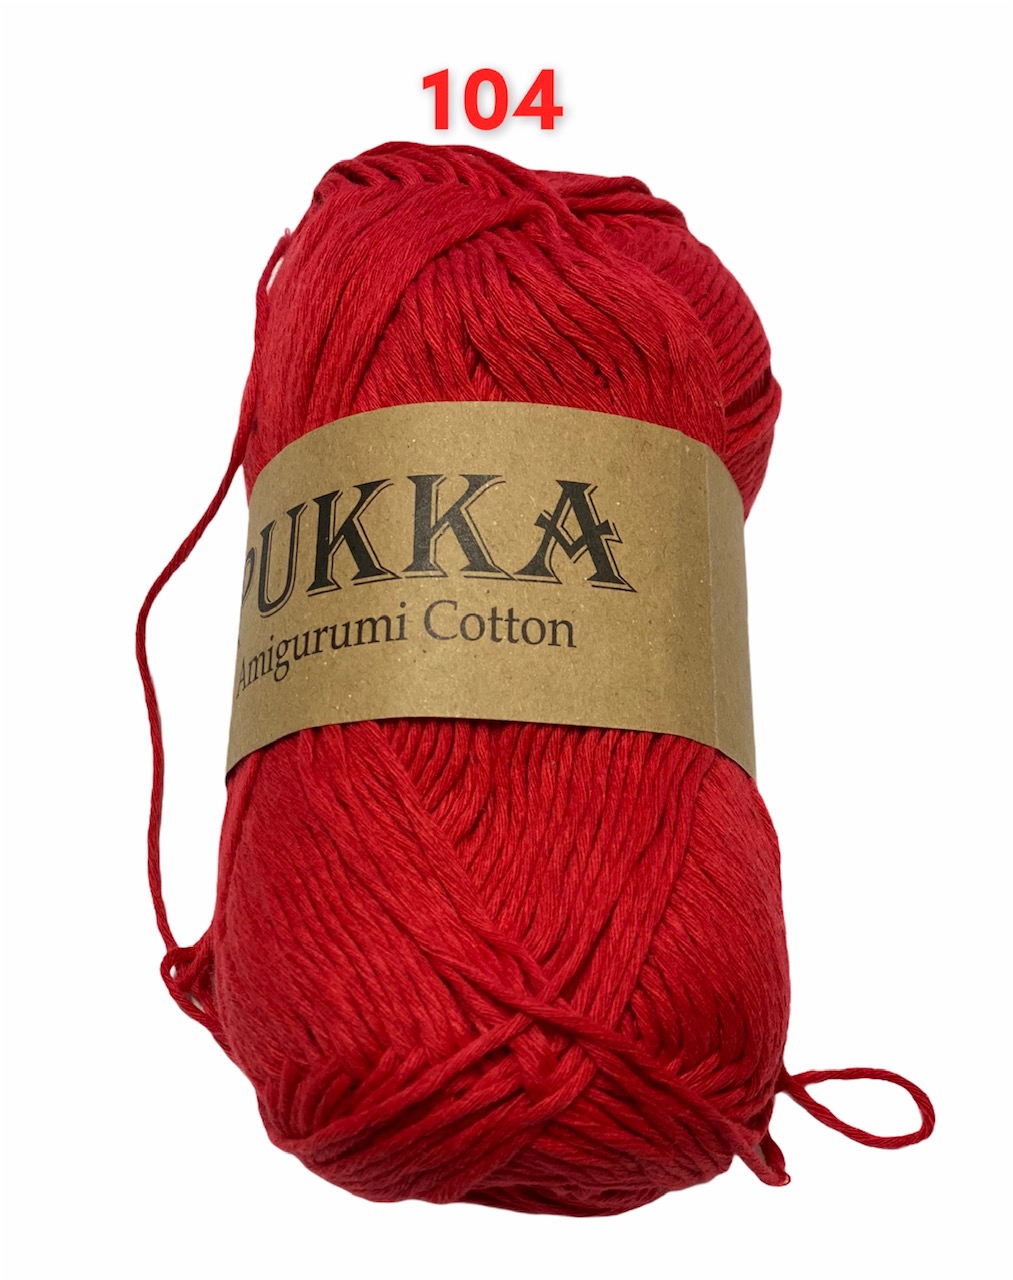 PUKKA Amigurumi Cotton 100g,104